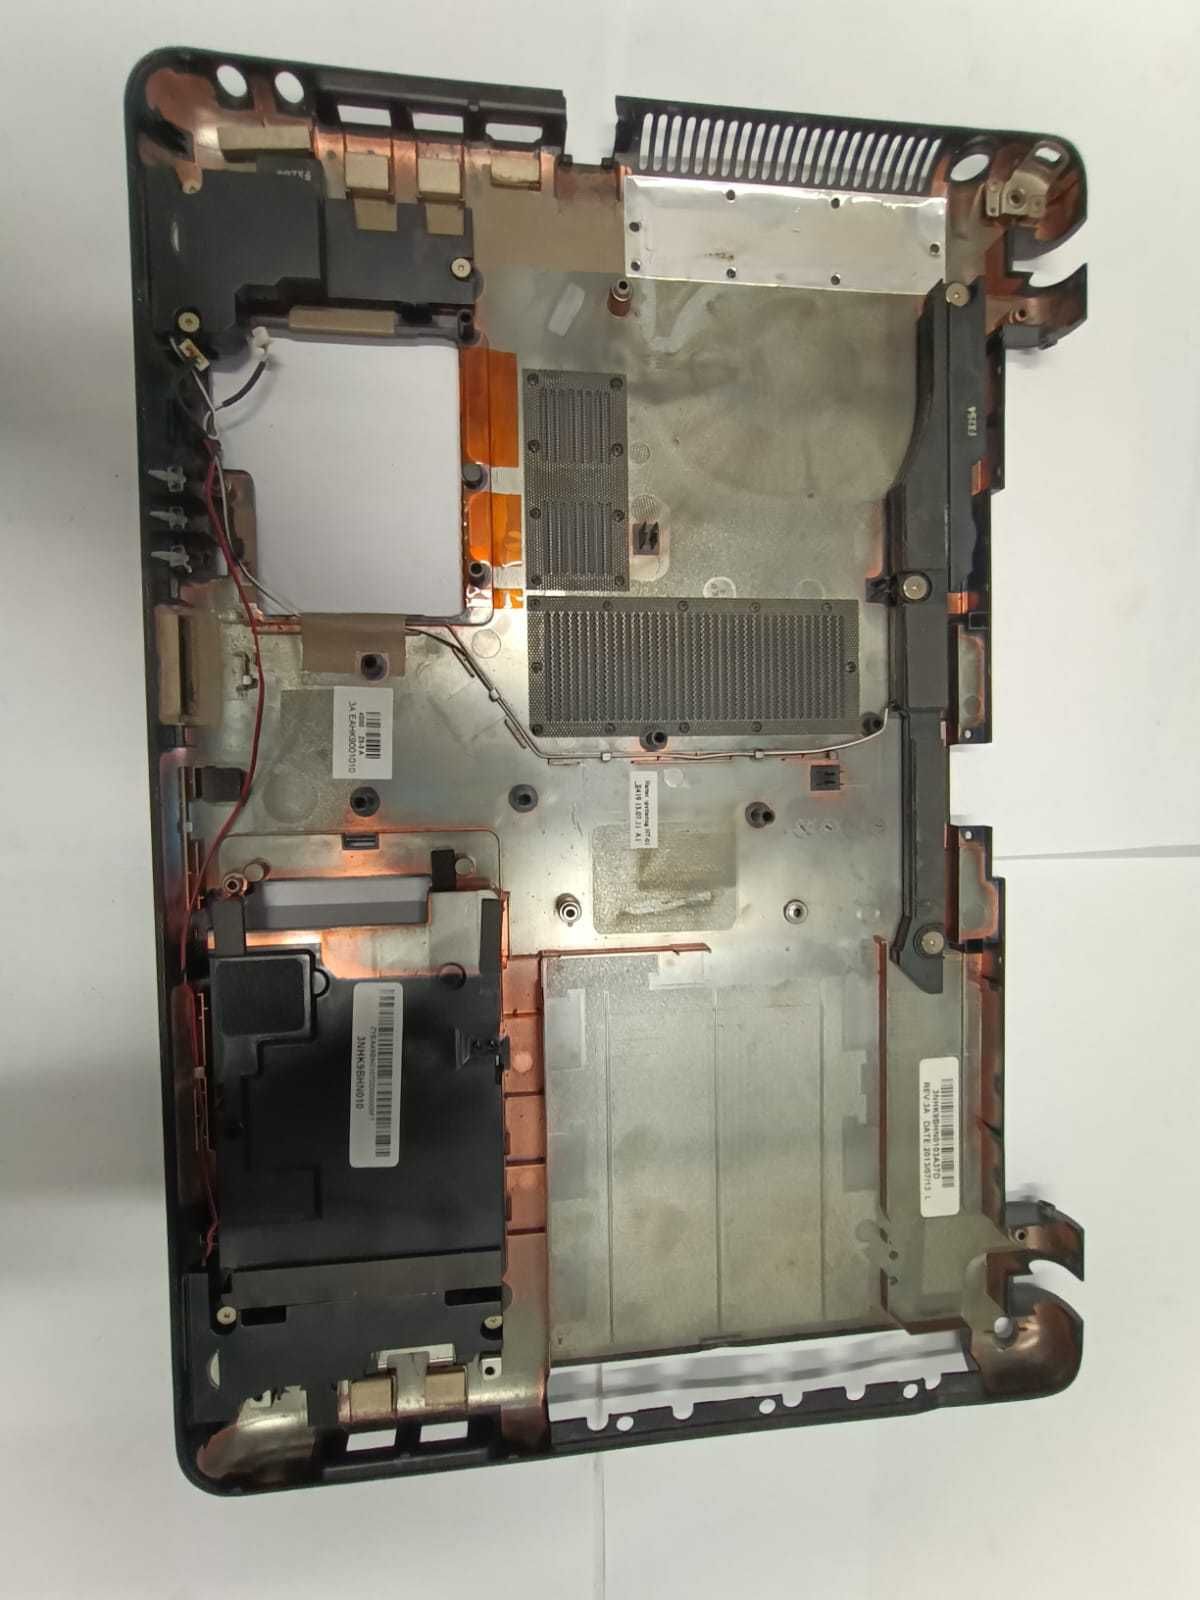 Dolna obudowa do laptopa SONY SVF 152A29M.